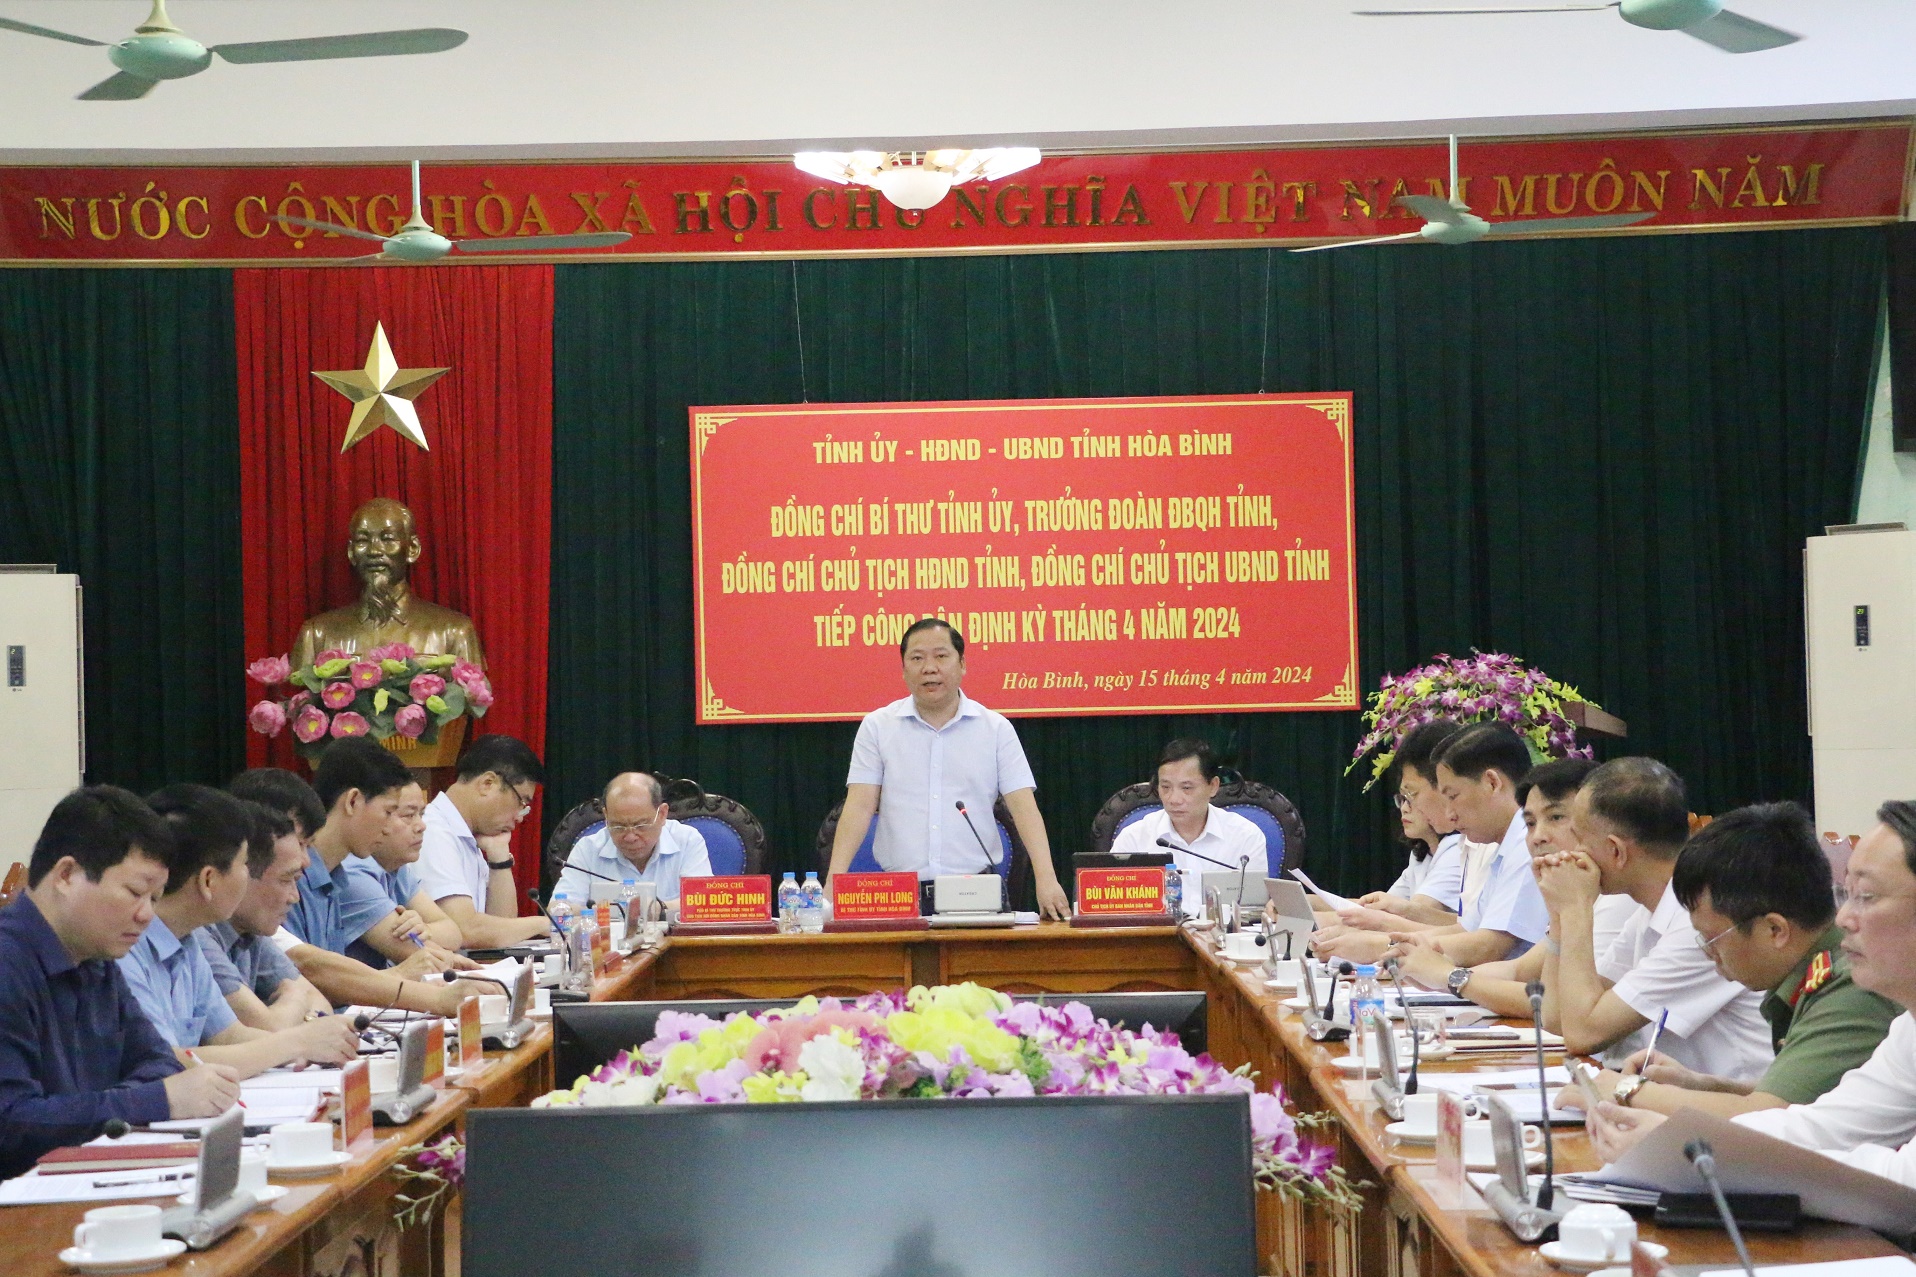 Đồng chí Nguyễn Phi Long, Ủy viên dự khuyết BCH T.Ư Đảng, Bí thư Tỉnh ủy phát biểu tại buổi tiếp công dân định kỳ tháng 4